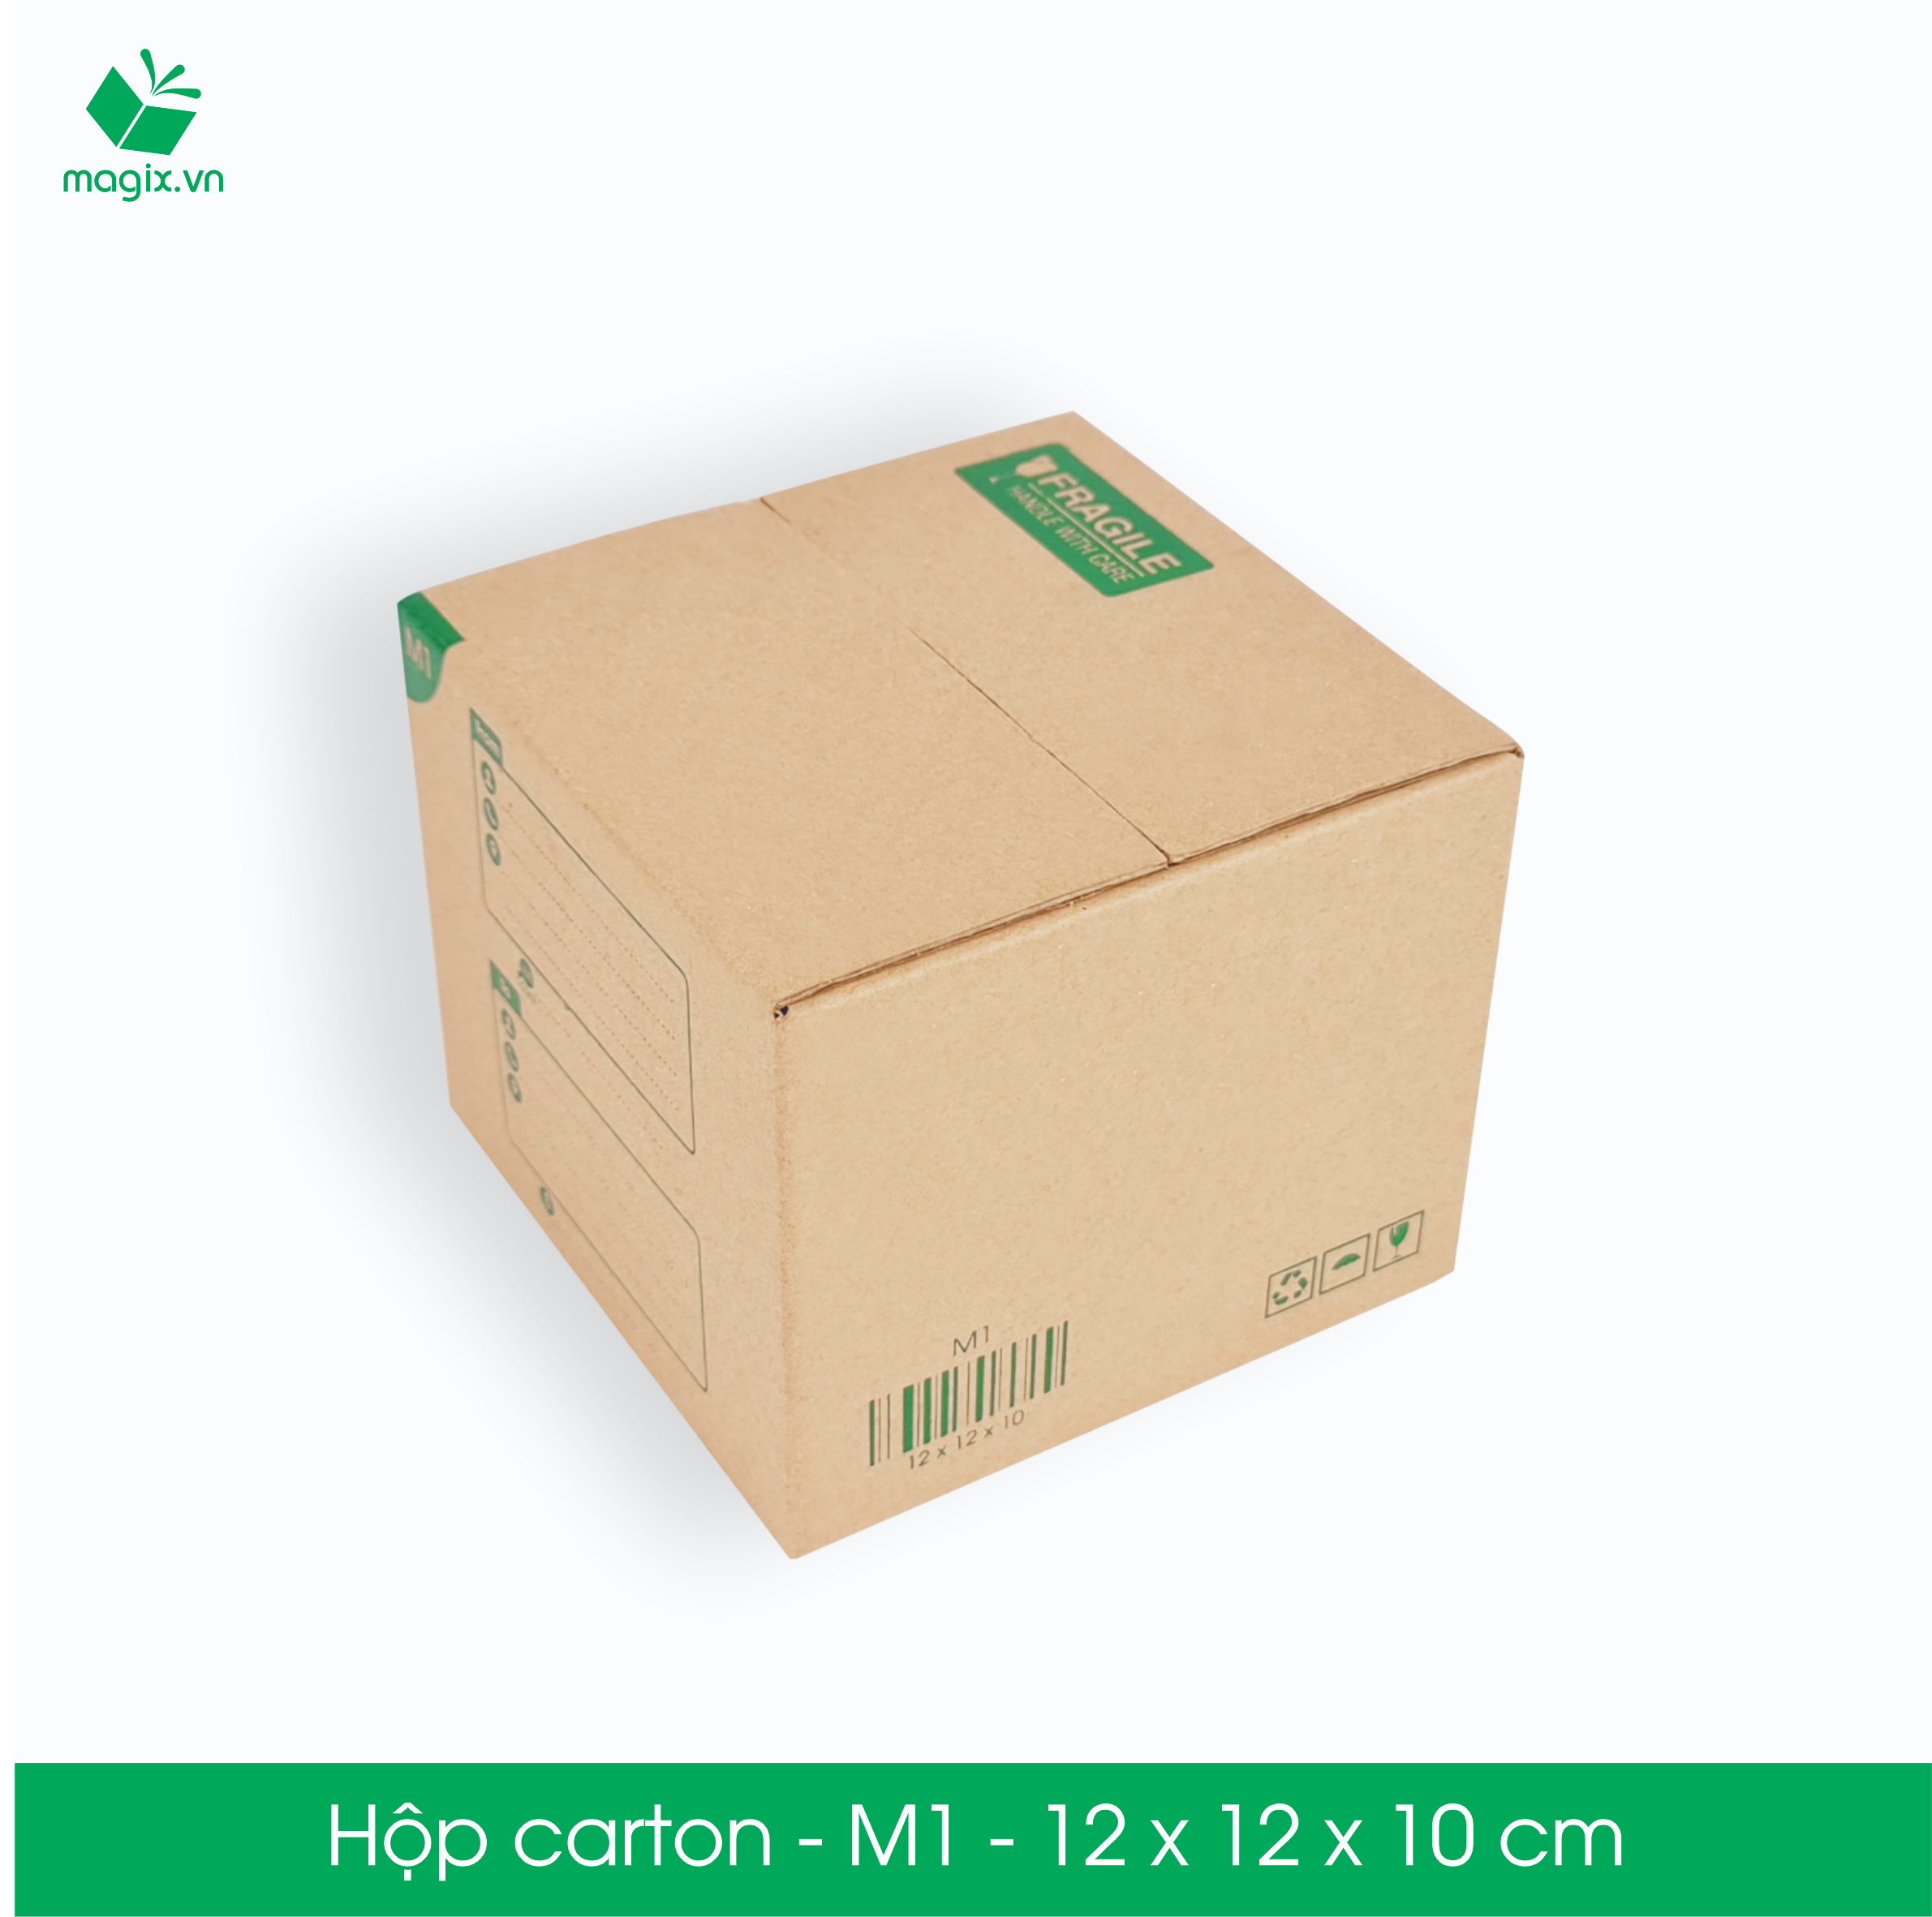 60 Thùng hộp carton đóng hàng - M1 - 12x12x10 cm